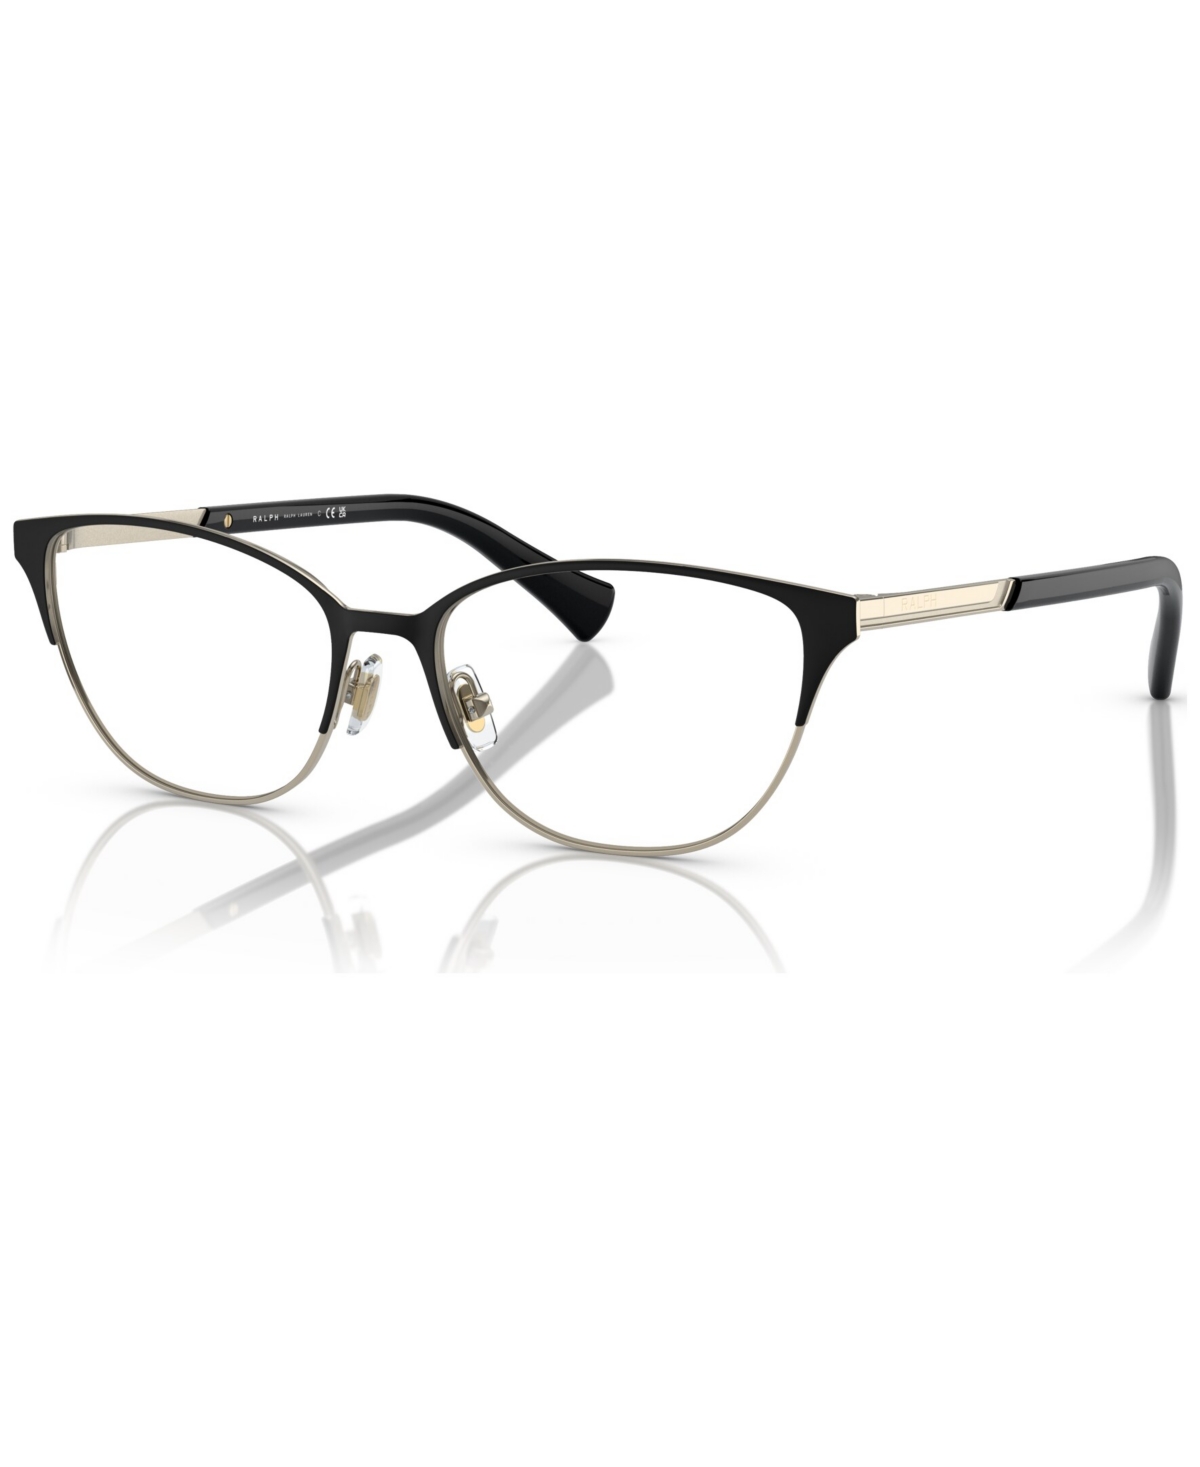 Women's Cat Eye Eyeglasses, RA6055 54 - Semi Shiny Black